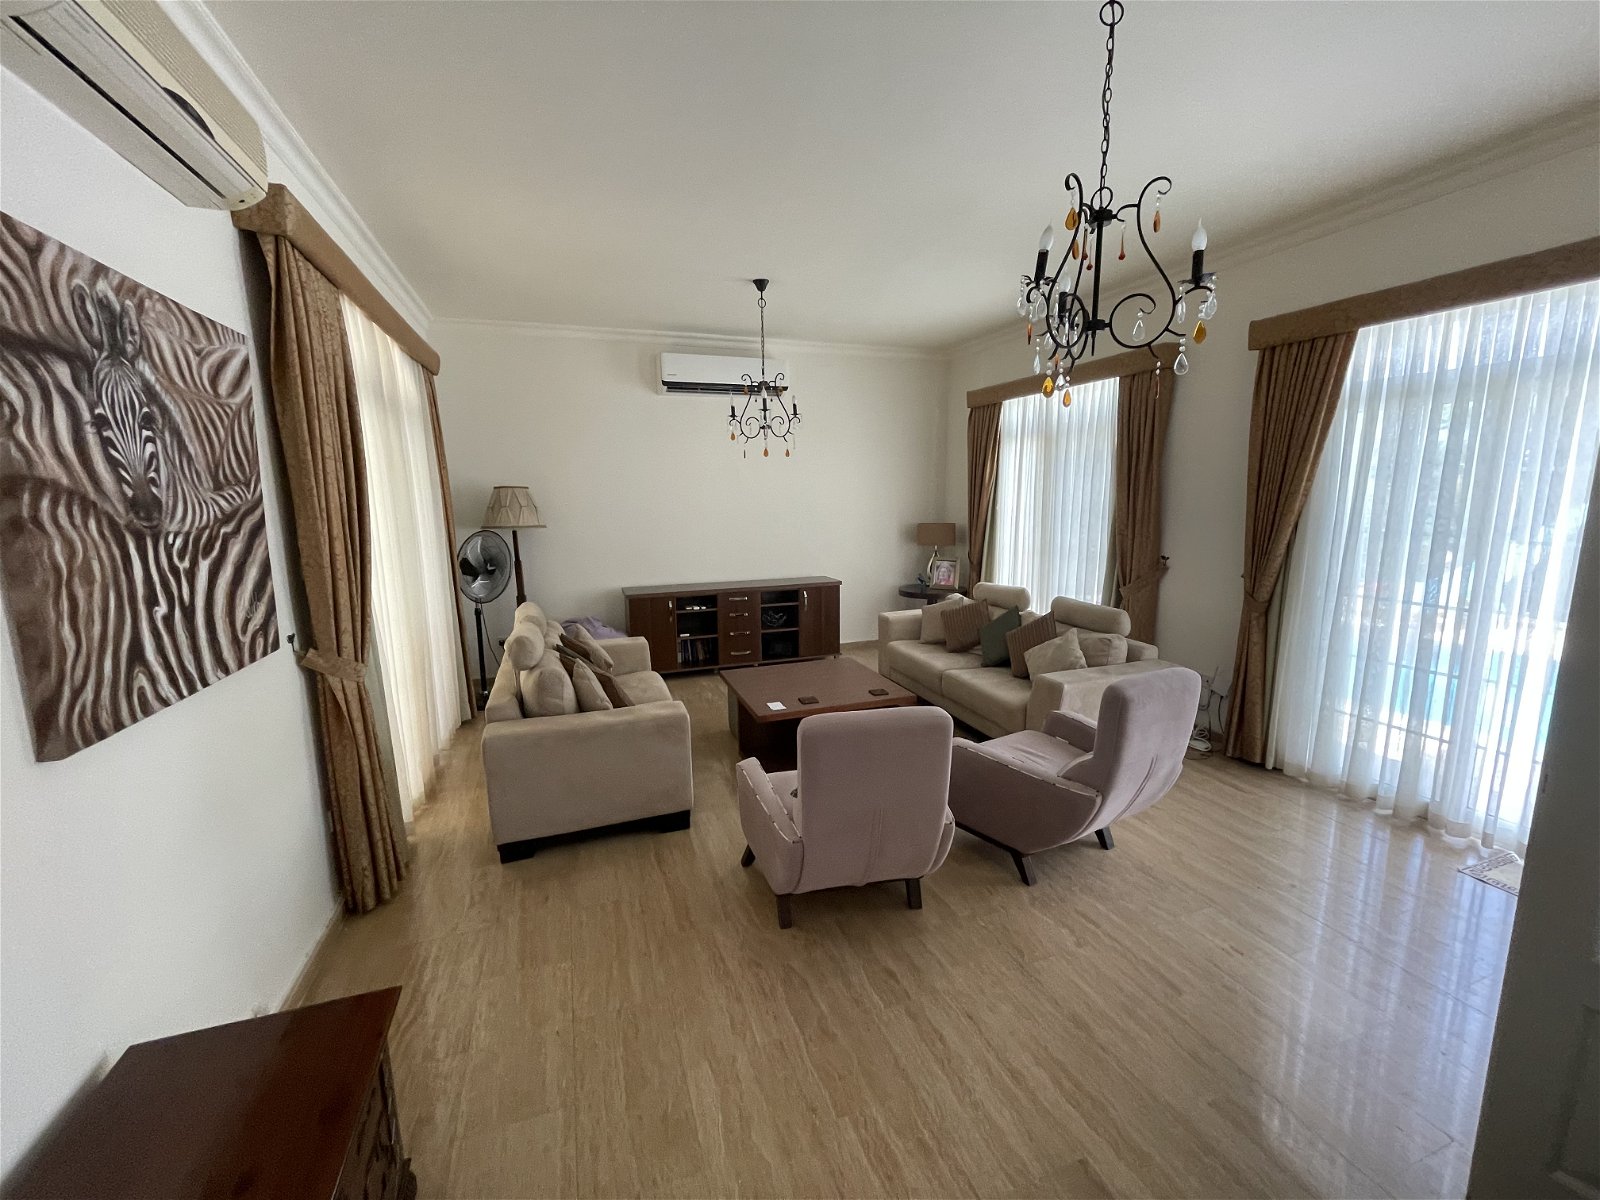 For Sale 3 +1 Turkish Deeded Villa in Karaoglanoglu Kyrenia-1428a356-0cb6-4c3d-8eac-64da074109e1